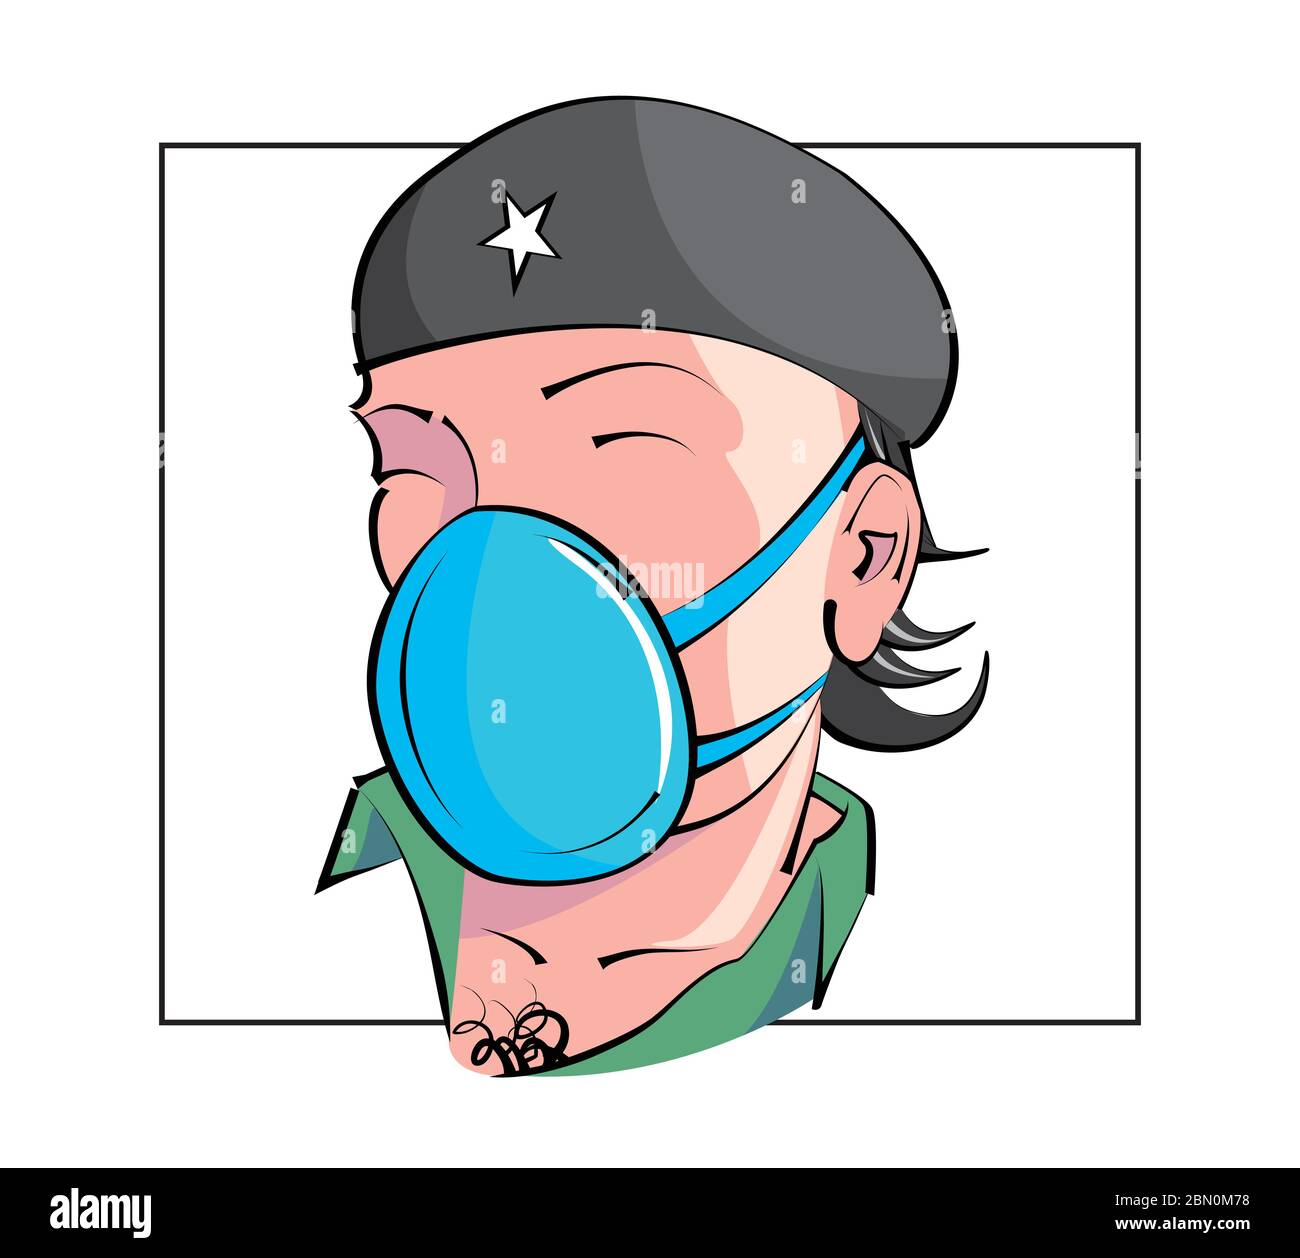 Dessin humoristique montrant le visage de la guérilla nommée Che Guevara avec masque sur fond blanc Illustration de Vecteur